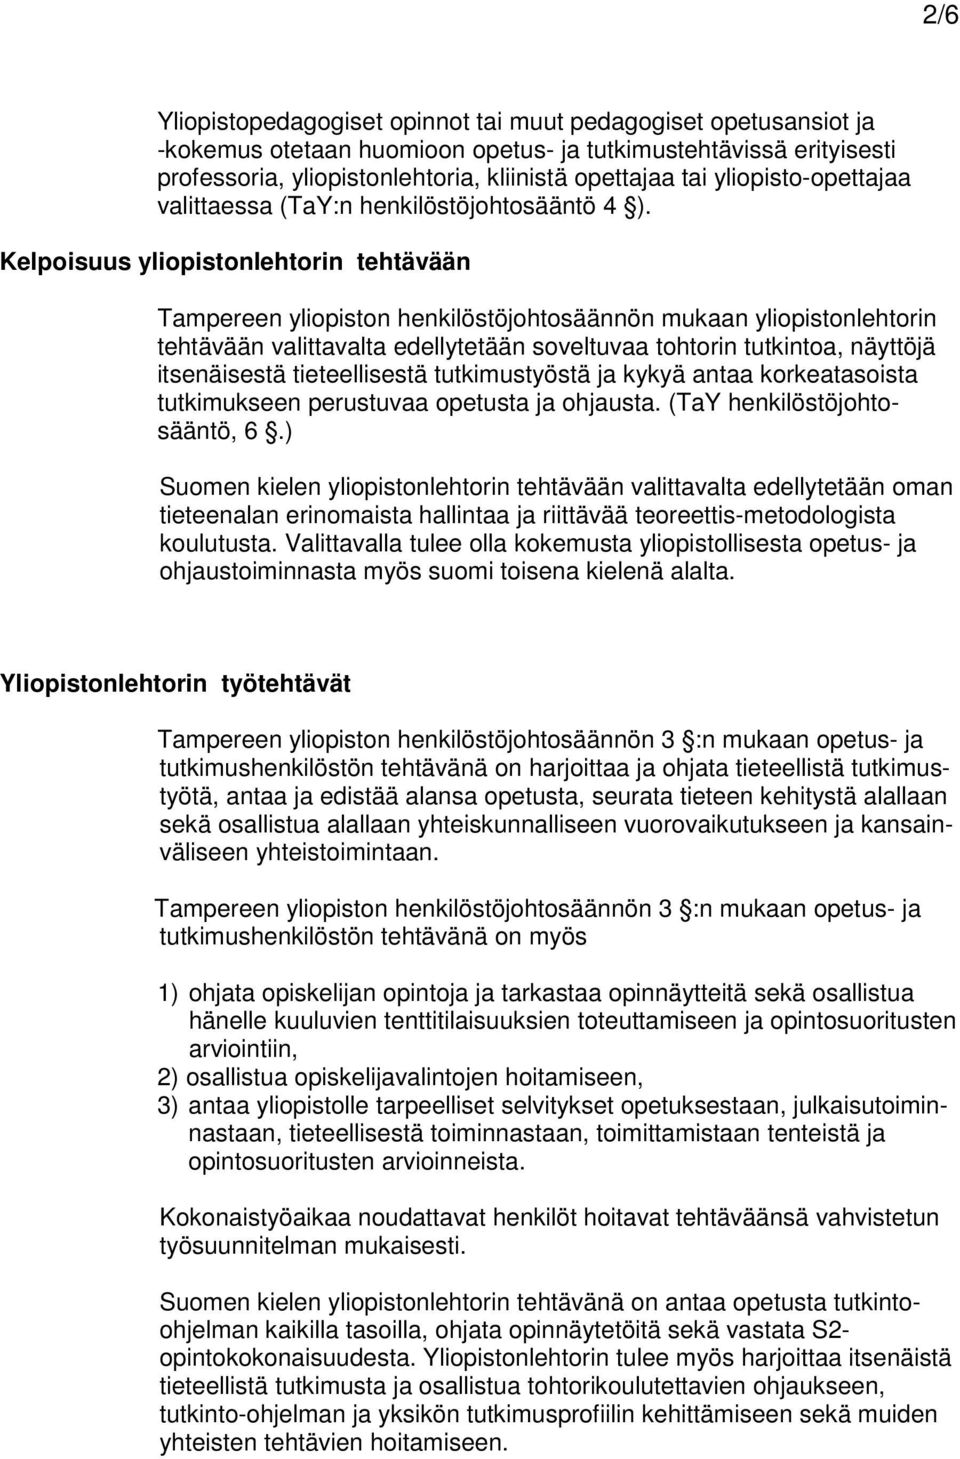 Kelpoisuus yliopistonlehtorin tehtävään Tampereen yliopiston henkilöstöjohtosäännön mukaan yliopistonlehtorin tehtävään valittavalta edellytetään soveltuvaa tohtorin tutkintoa, näyttöjä itsenäisestä